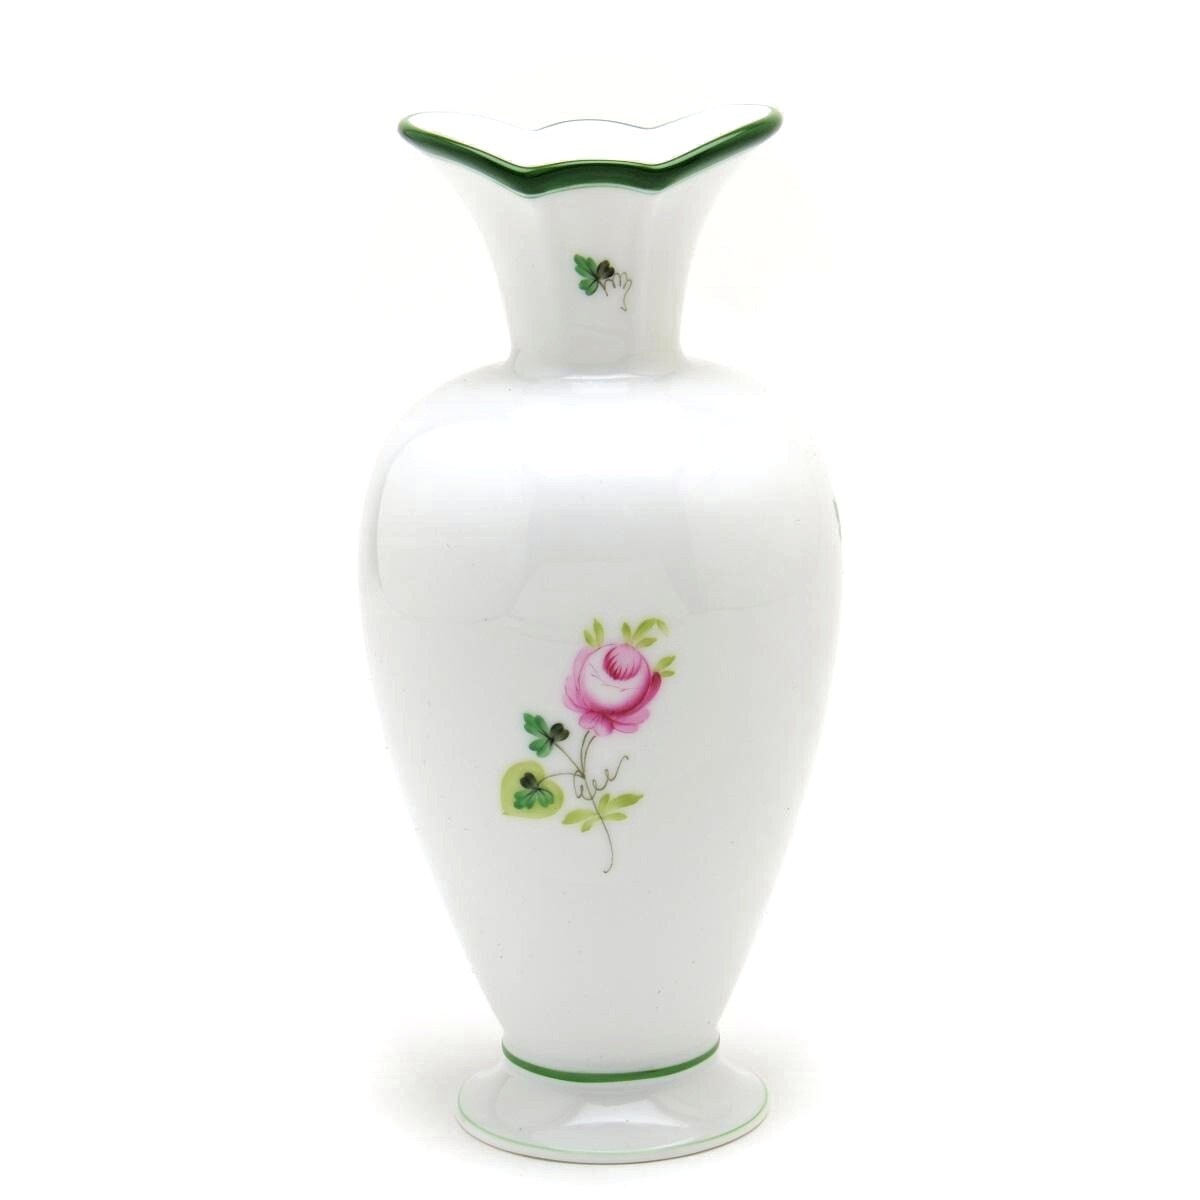 Herend Wiener Rosenvase (07053) Handbemaltes Porzellan, dekorative Vase, Blumenvase, Ornament, hergestellt in Ungarn, Neu-Herend, Möbel, Innere, Innenausstattung, Vase